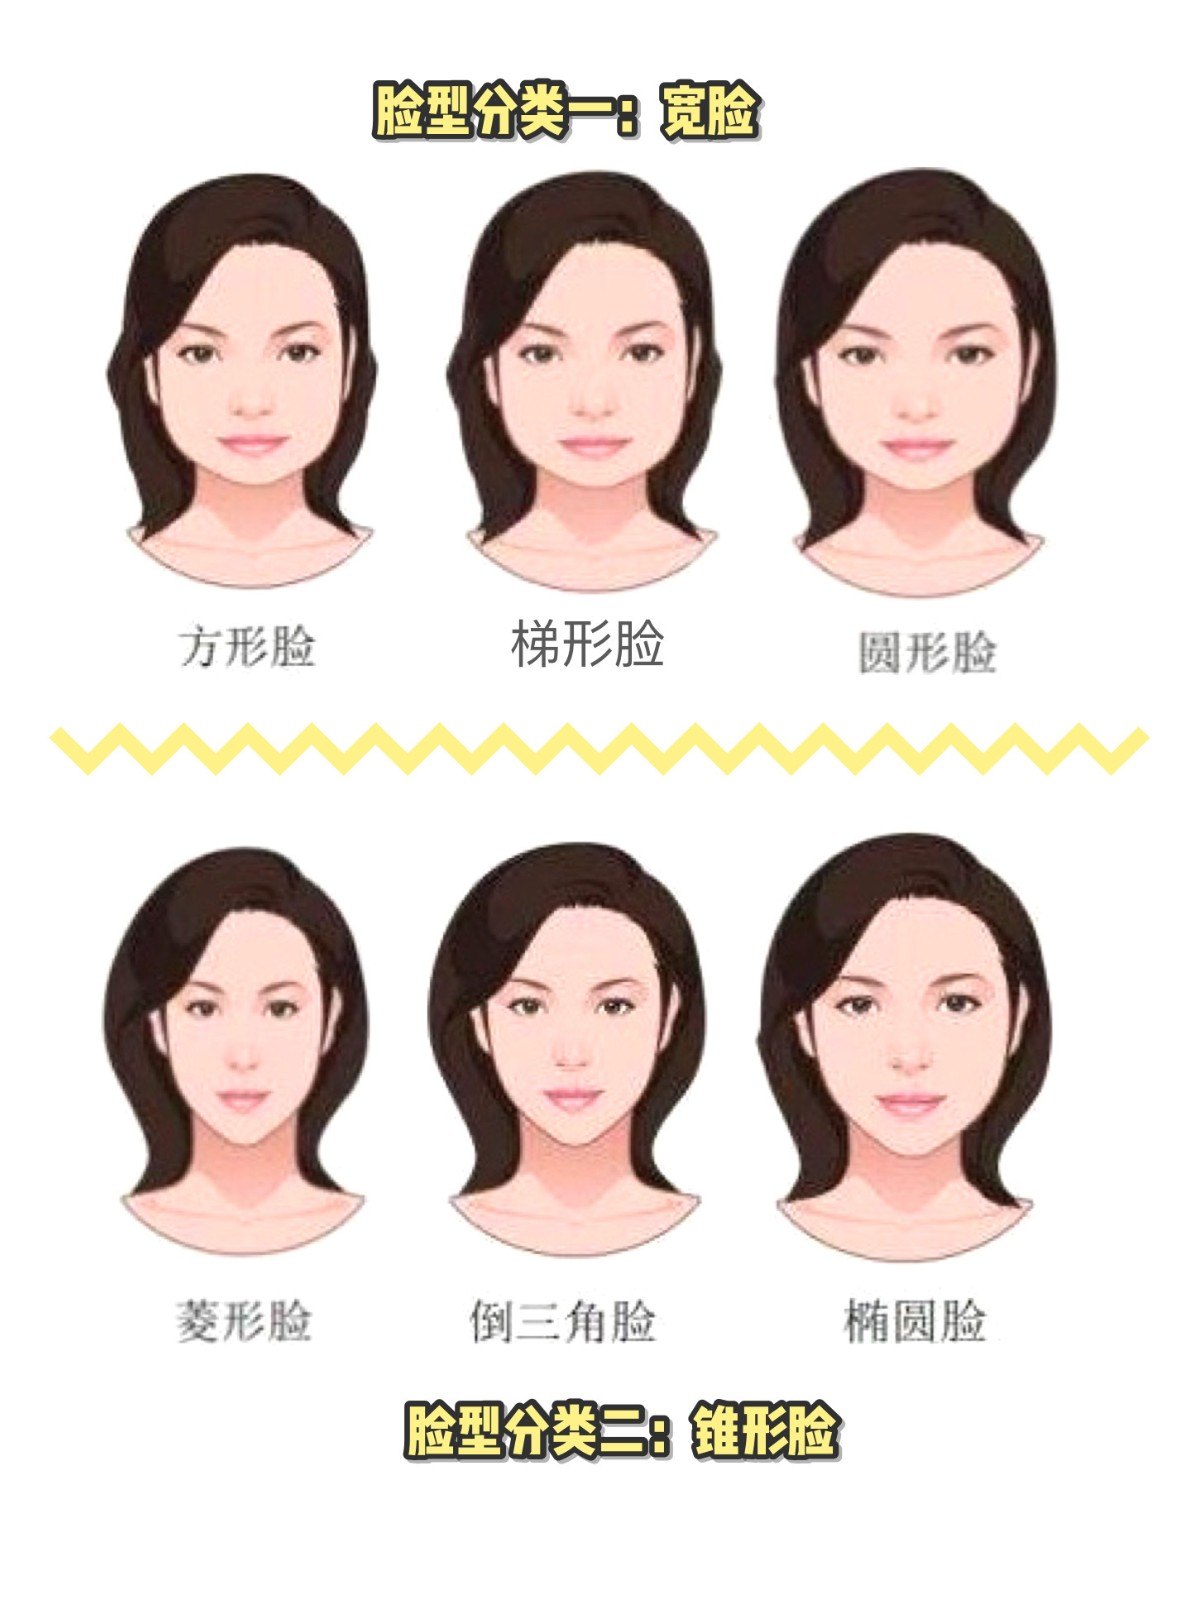 那么,同样的松弛程度,不同的脸型效果改善是否相同呢?